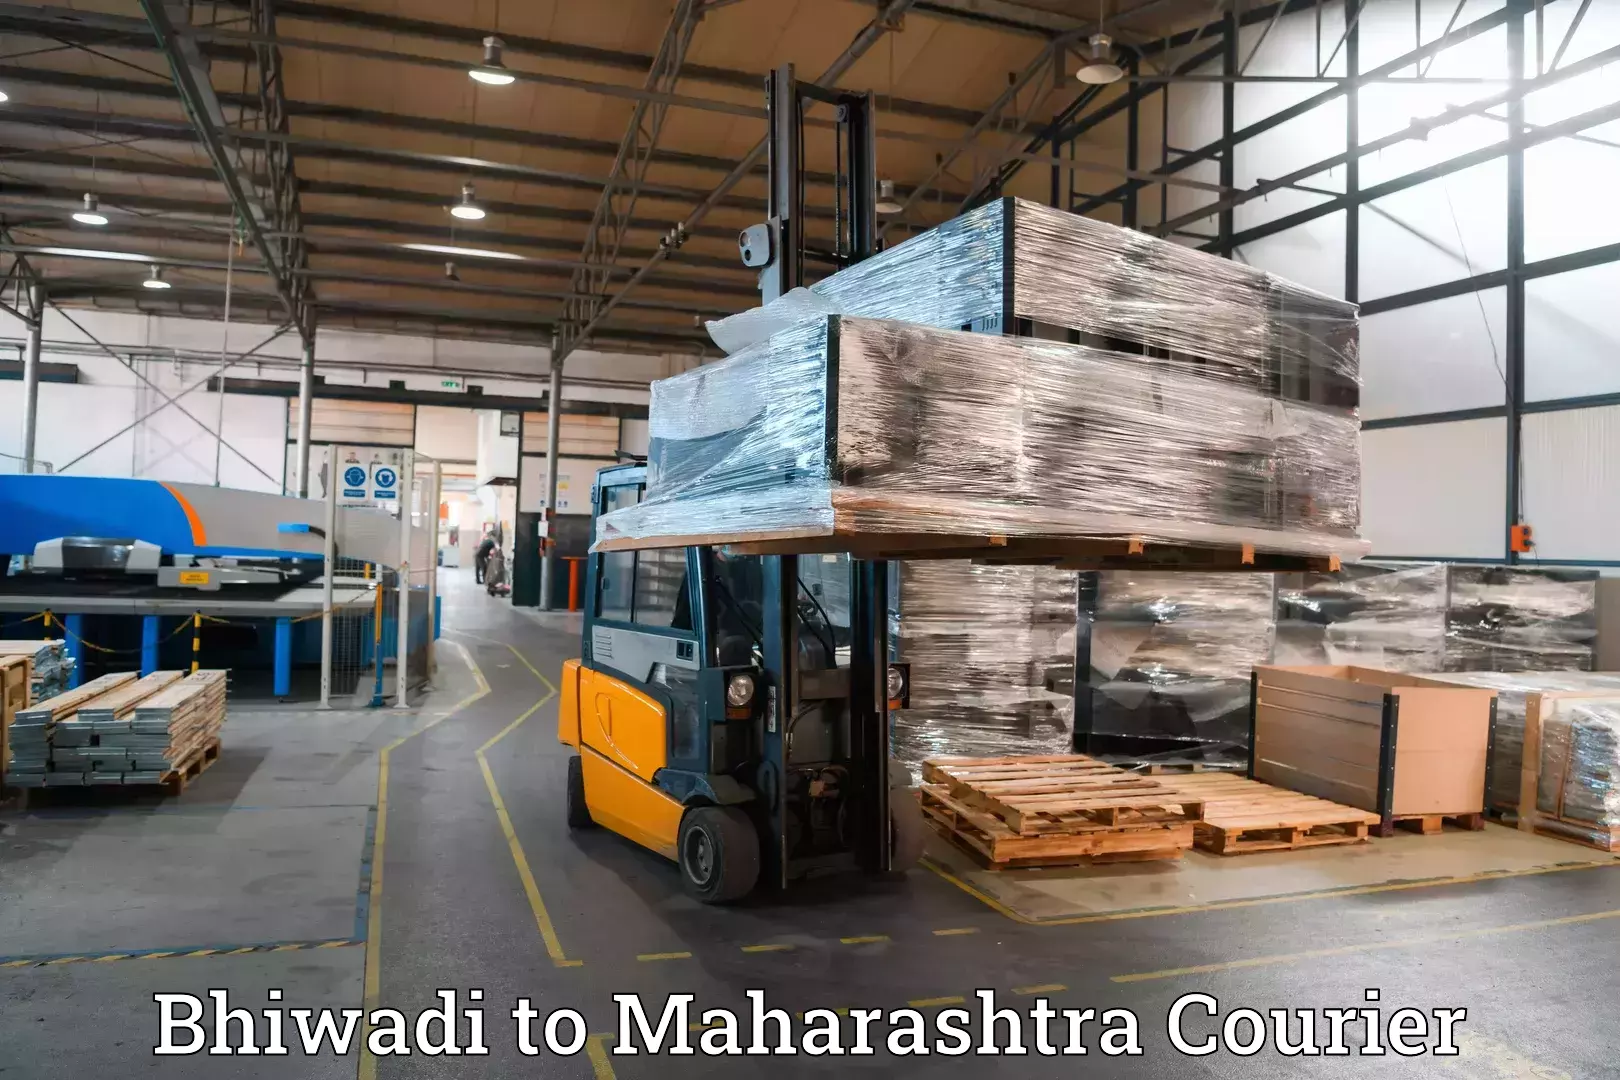 Luggage transport company Bhiwadi to Maharashtra